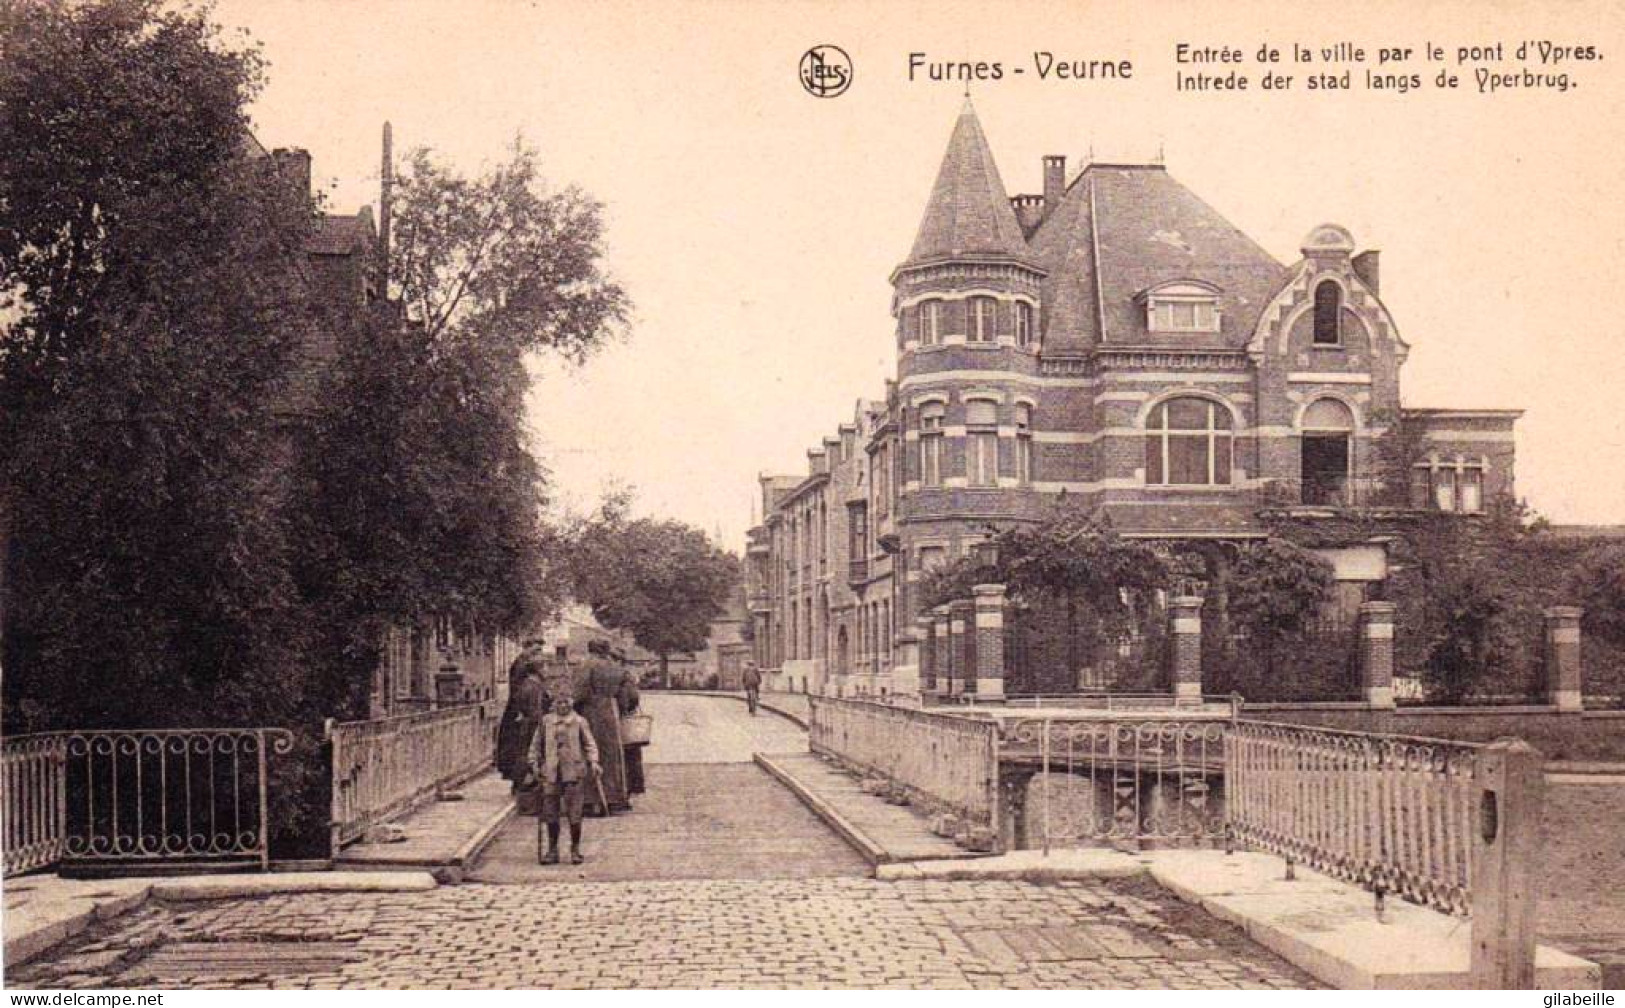 FURNES - VEURNE - Entrée De La Ville Par Le Pont D'Ypres - Intrede Der Stad Langs De Yperbrug  - Veurne